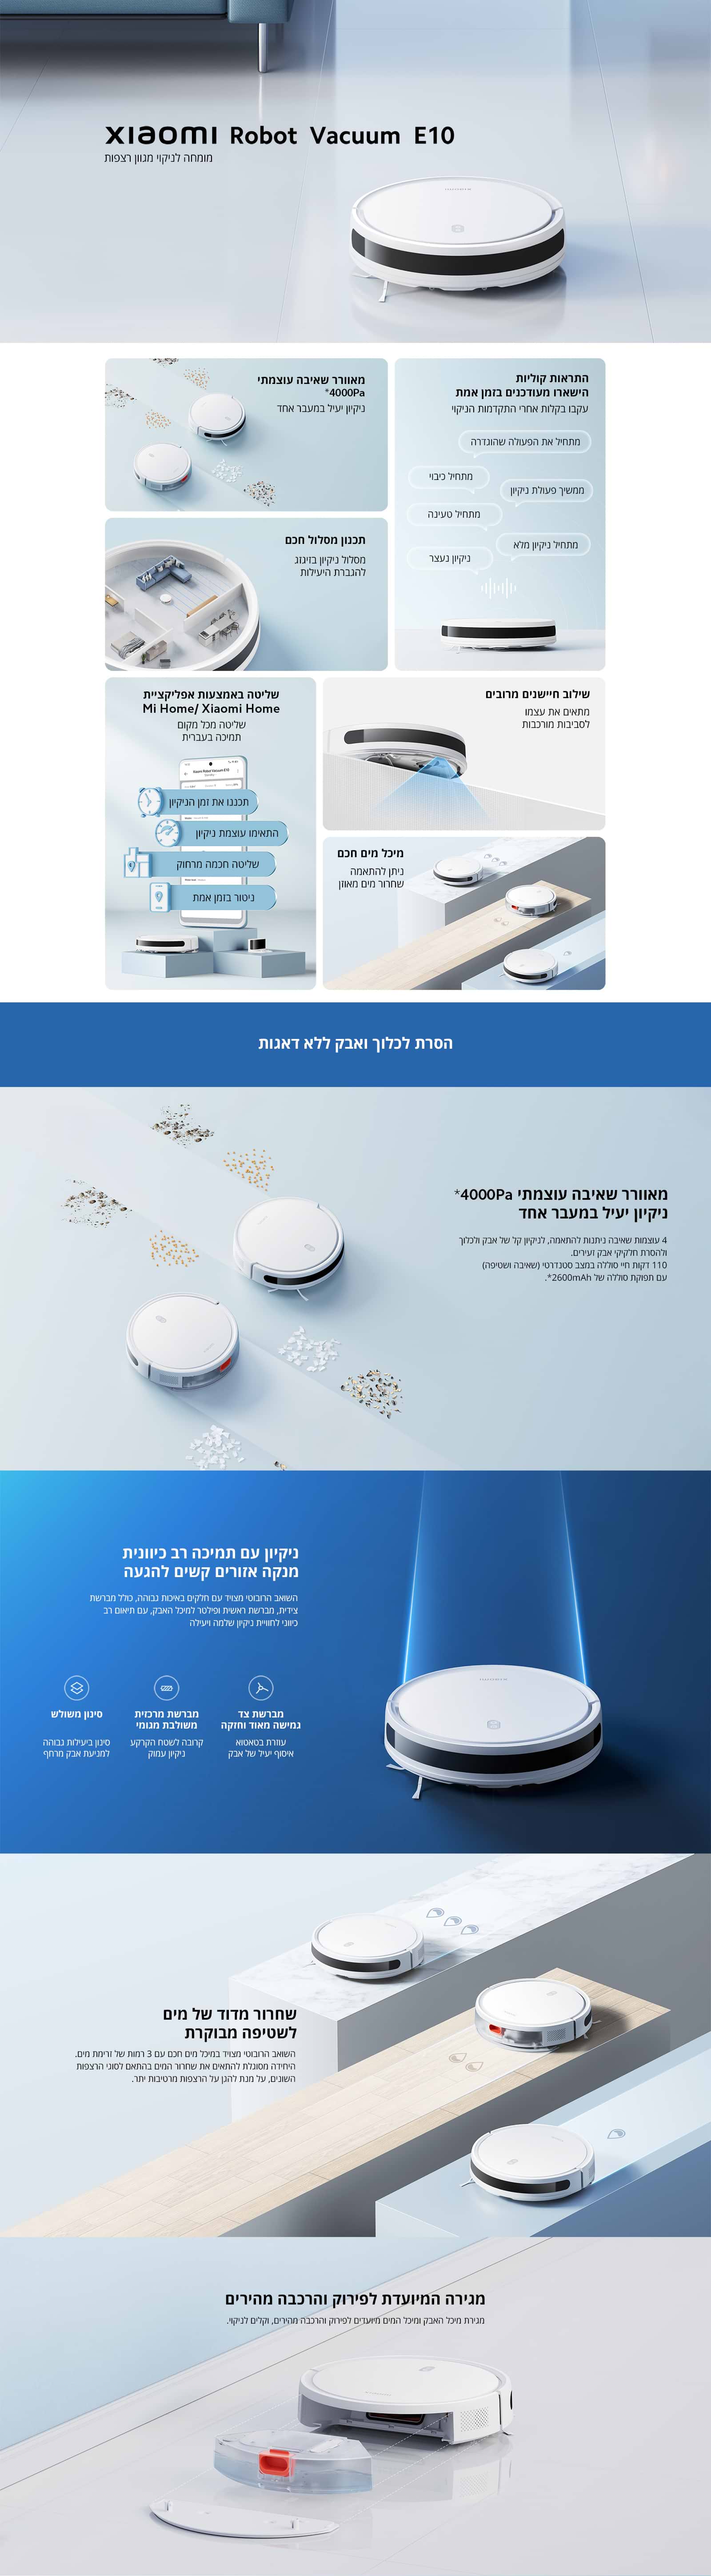 שואב אבק רובוטי שוטף Xiaomi Robot Vacuum E10 - שנתיים אחריות ע"י היבואן הרשמי 